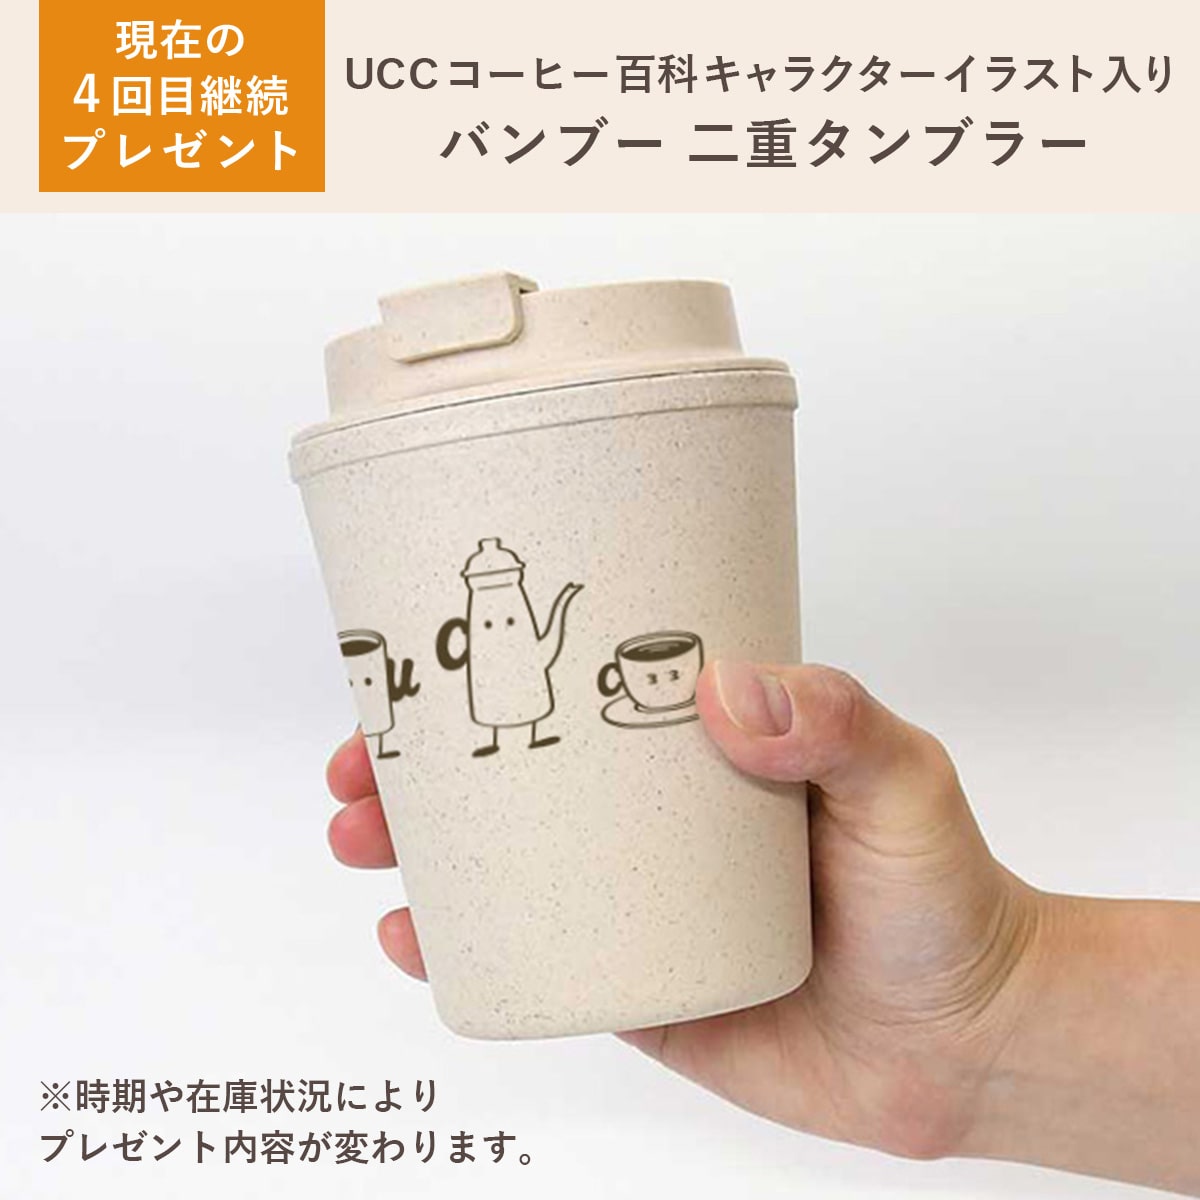 ＜定期購入＞【送料無料】UCC &Healthy リッチフレーバー ワンドリップコーヒー 30日分セット